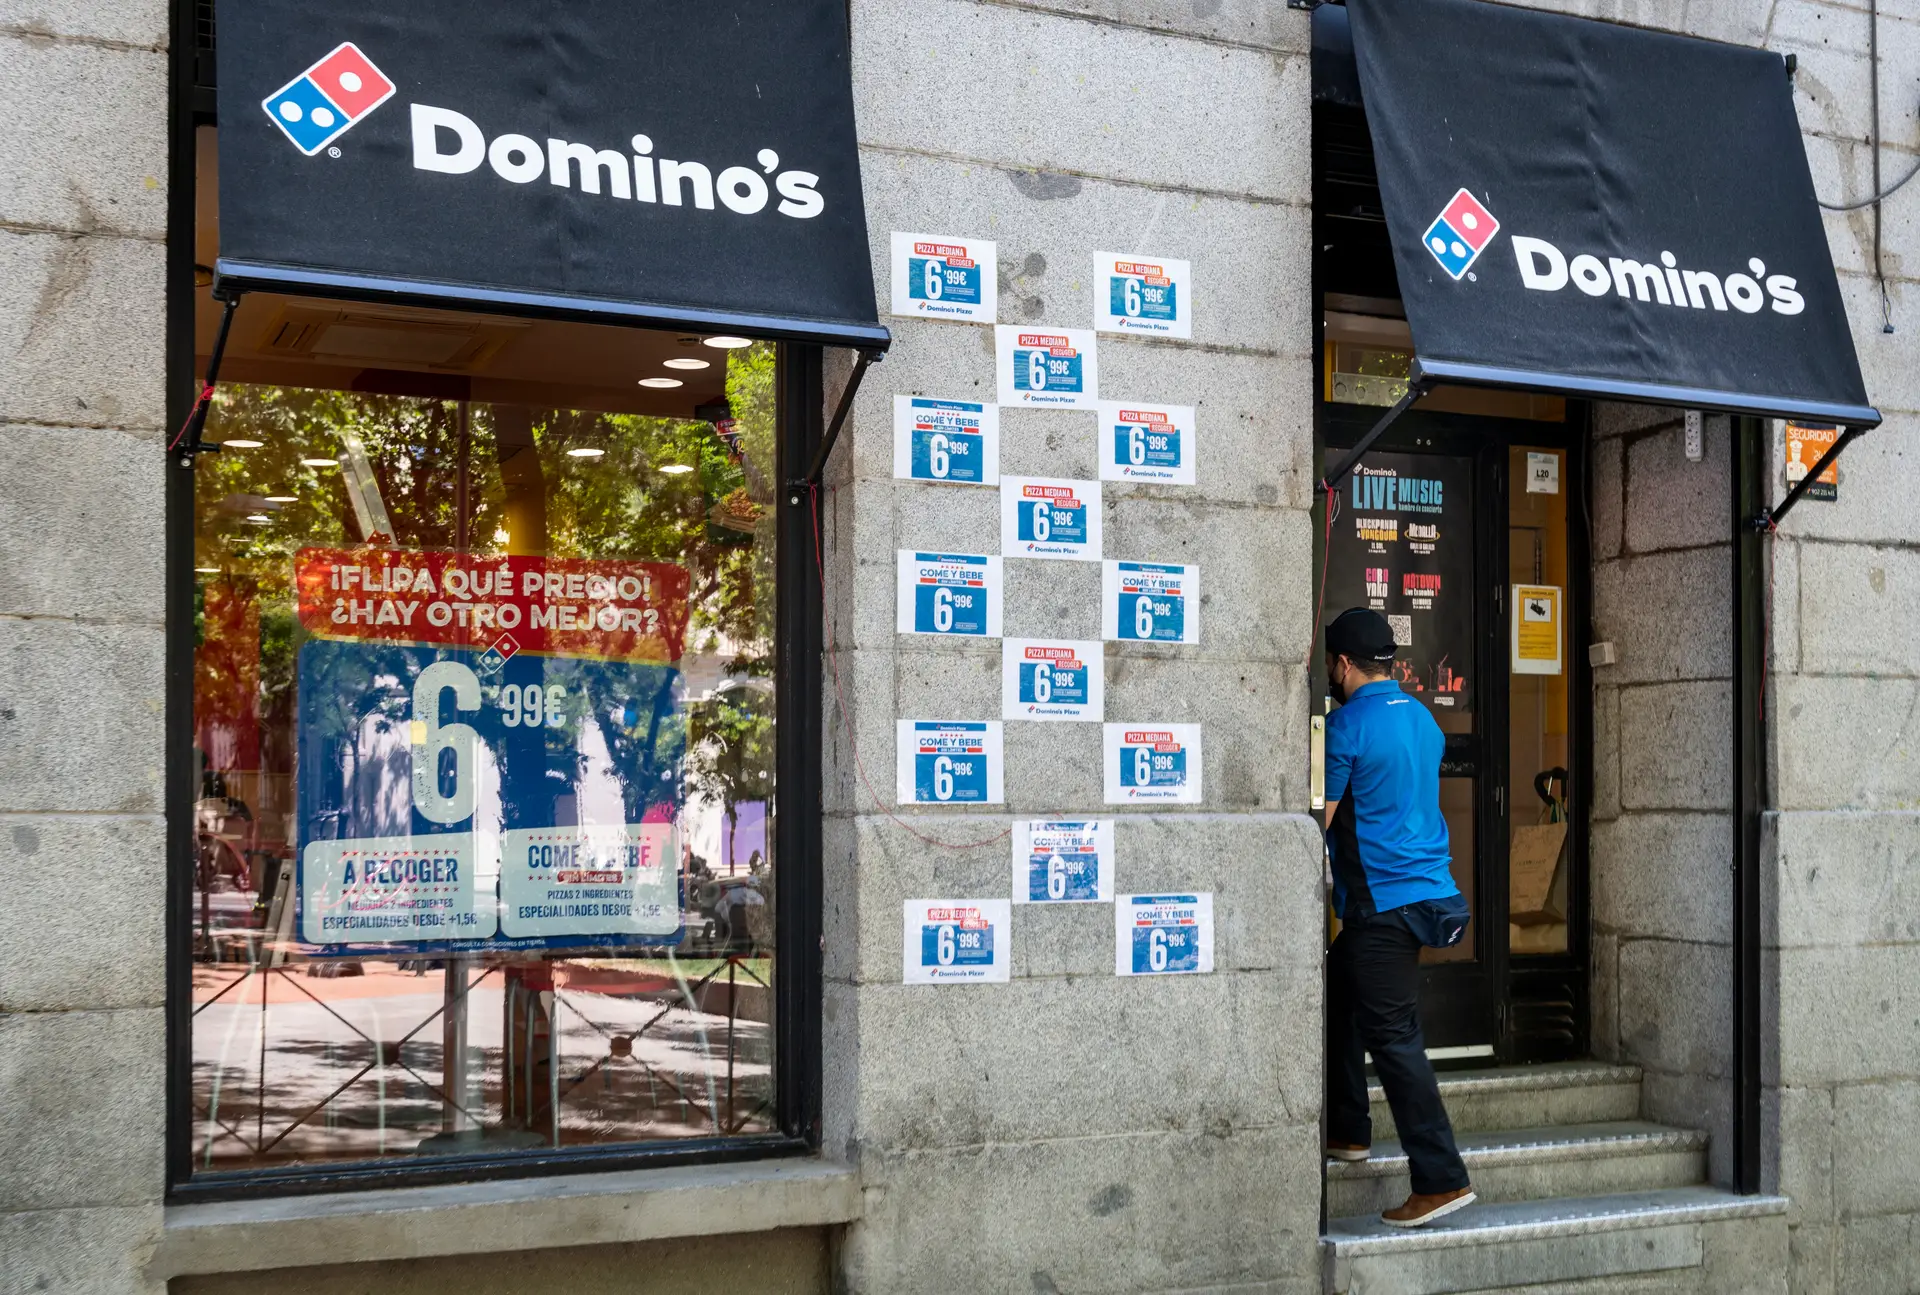 Derrotada pela pizza tradicional, Domino's fecha último restaurante em Itália